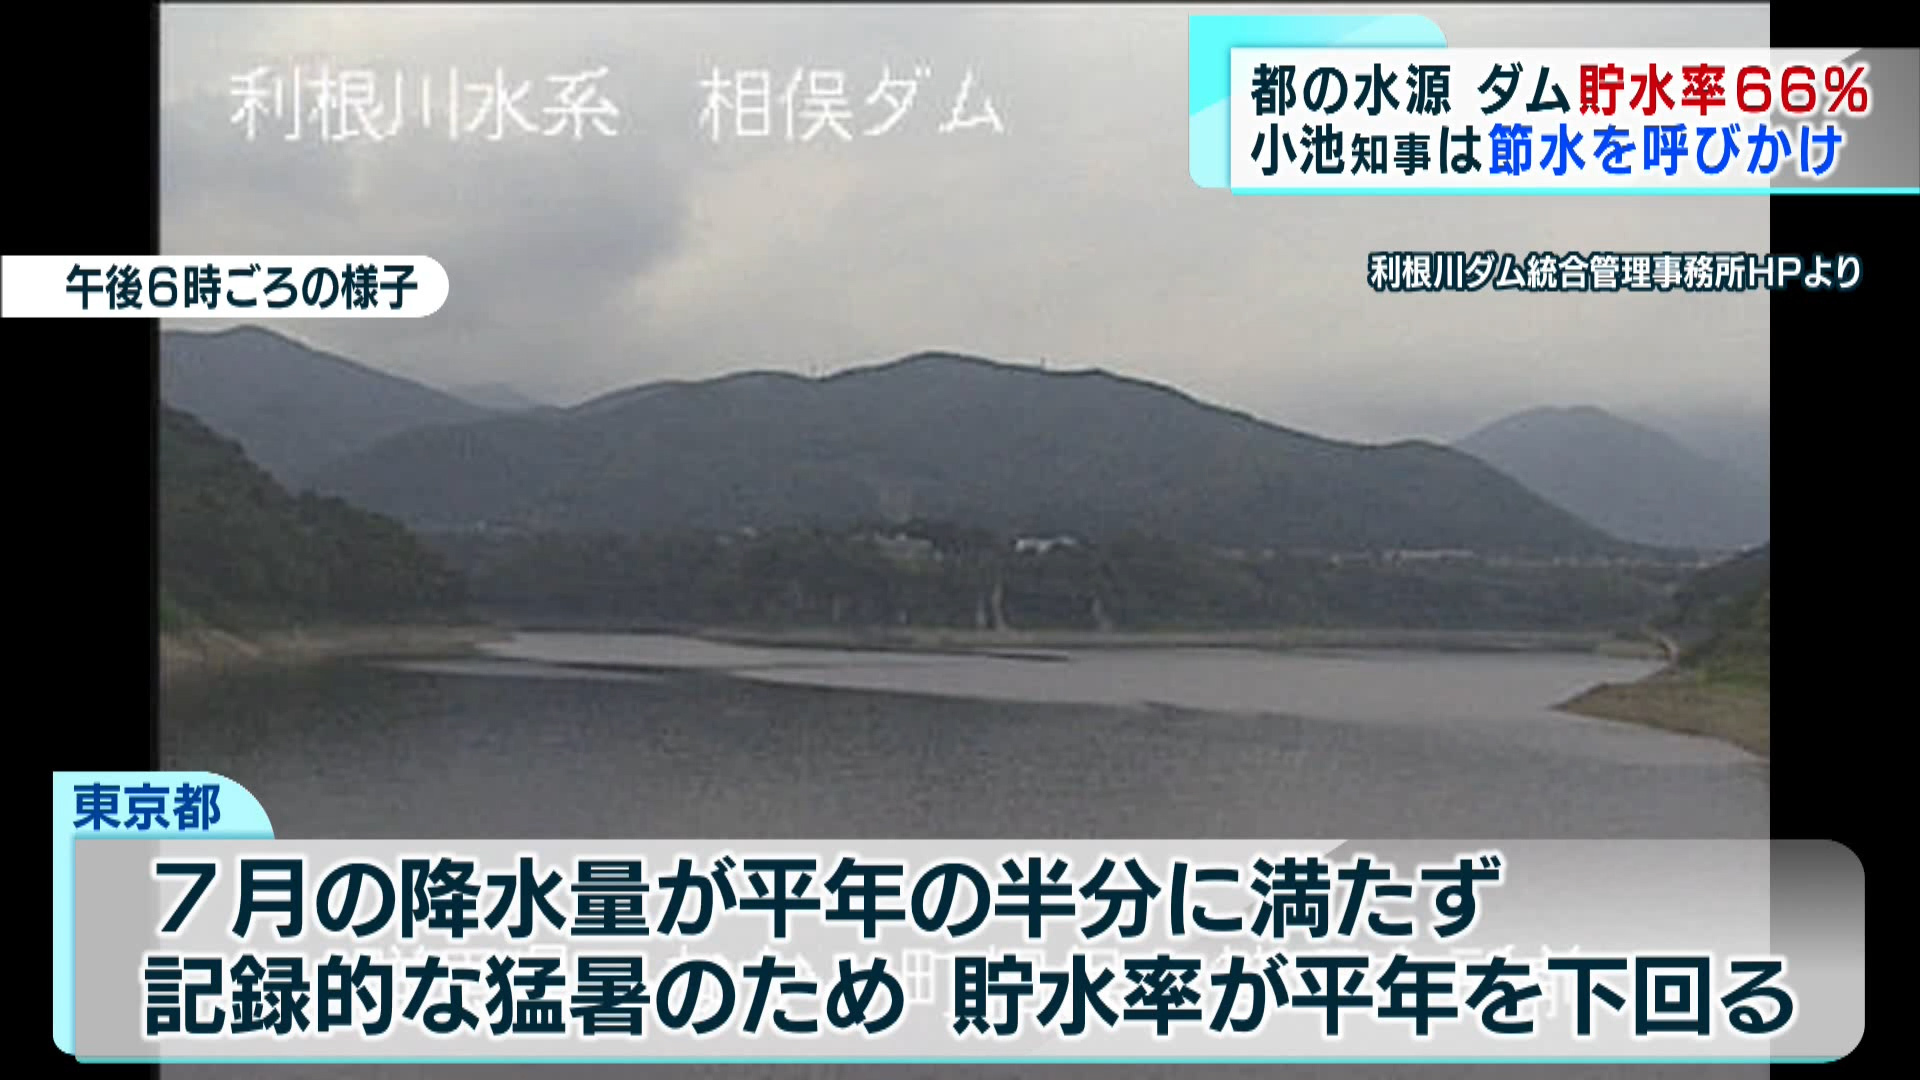 この夏、暑さと食中毒以外に、渇水にも警戒が必要となってきました。東京の水源となっている利根川水系のダムの貯水率が平年を下回っているとして、小池知事が節水への協力を呼び掛けました。